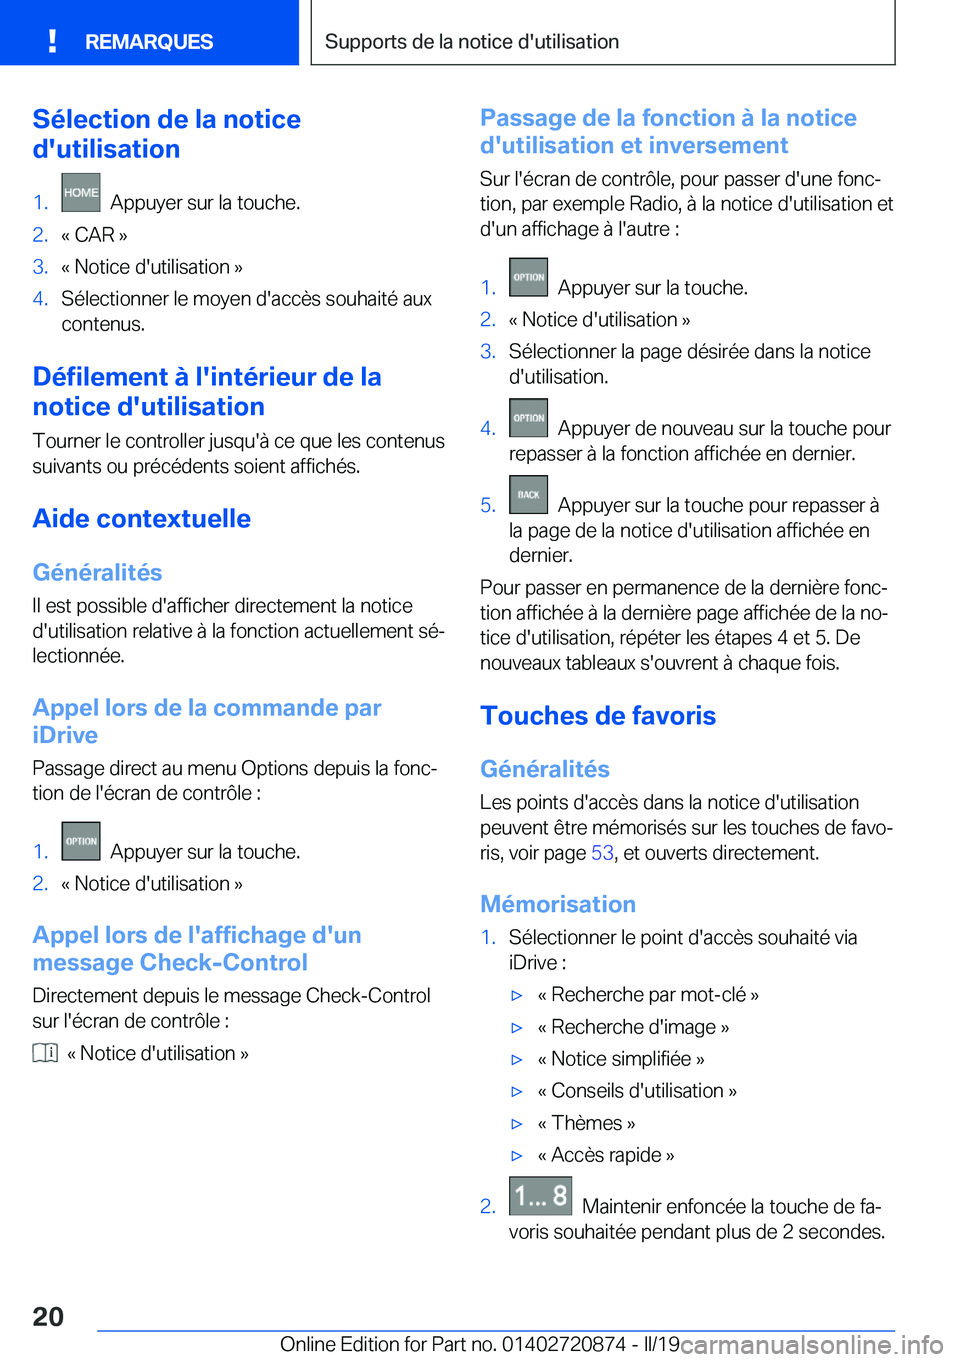 BMW X7 2019  Notices Demploi (in French) �S�é�l�e�c�t�i�o�n��d�e��l�a��n�o�t�i�c�e
�d�'�u�t�i�l�i�s�a�t�i�o�n�1�.���A�p�p�u�y�e�r��s�u�r��l�a��t�o�u�c�h�e�.�2�.�k��C�A�R��{�3�.�k��N�o�t�i�c�e��d�'�u�t�i�l�i�s�a�t�i�o�n�